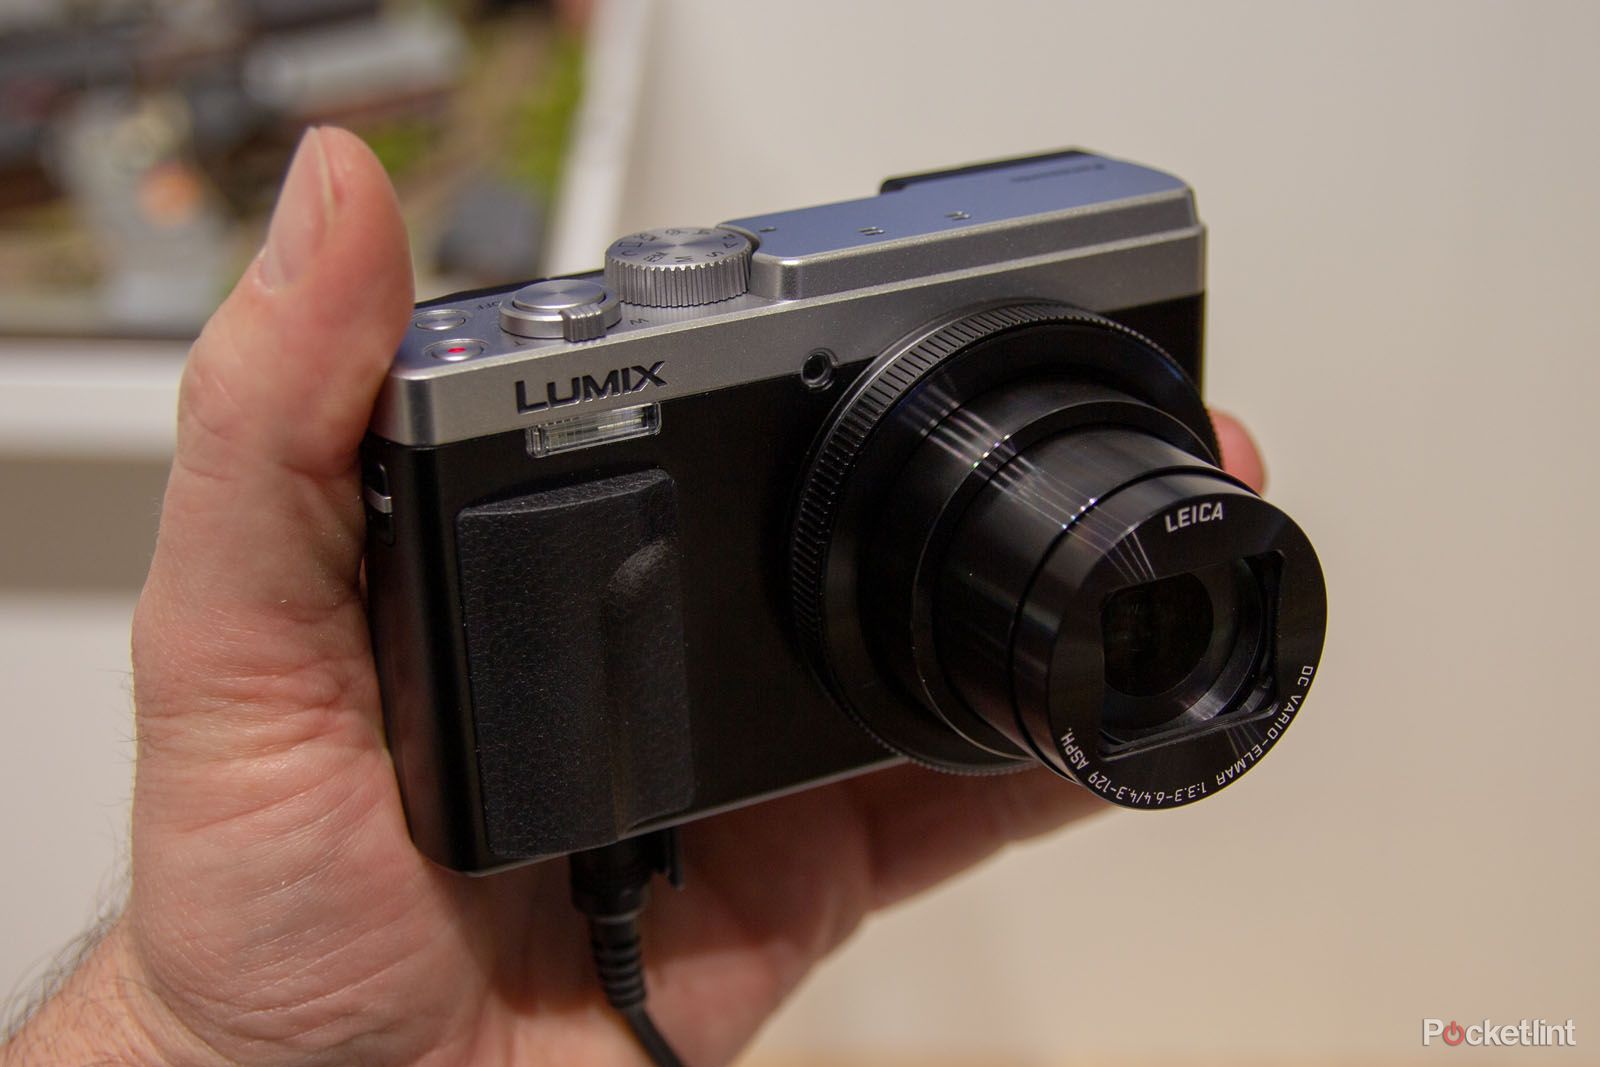 Heel veel goeds Minachting Fobie Panasonic TZ95: Showing there's life in compact cameras?